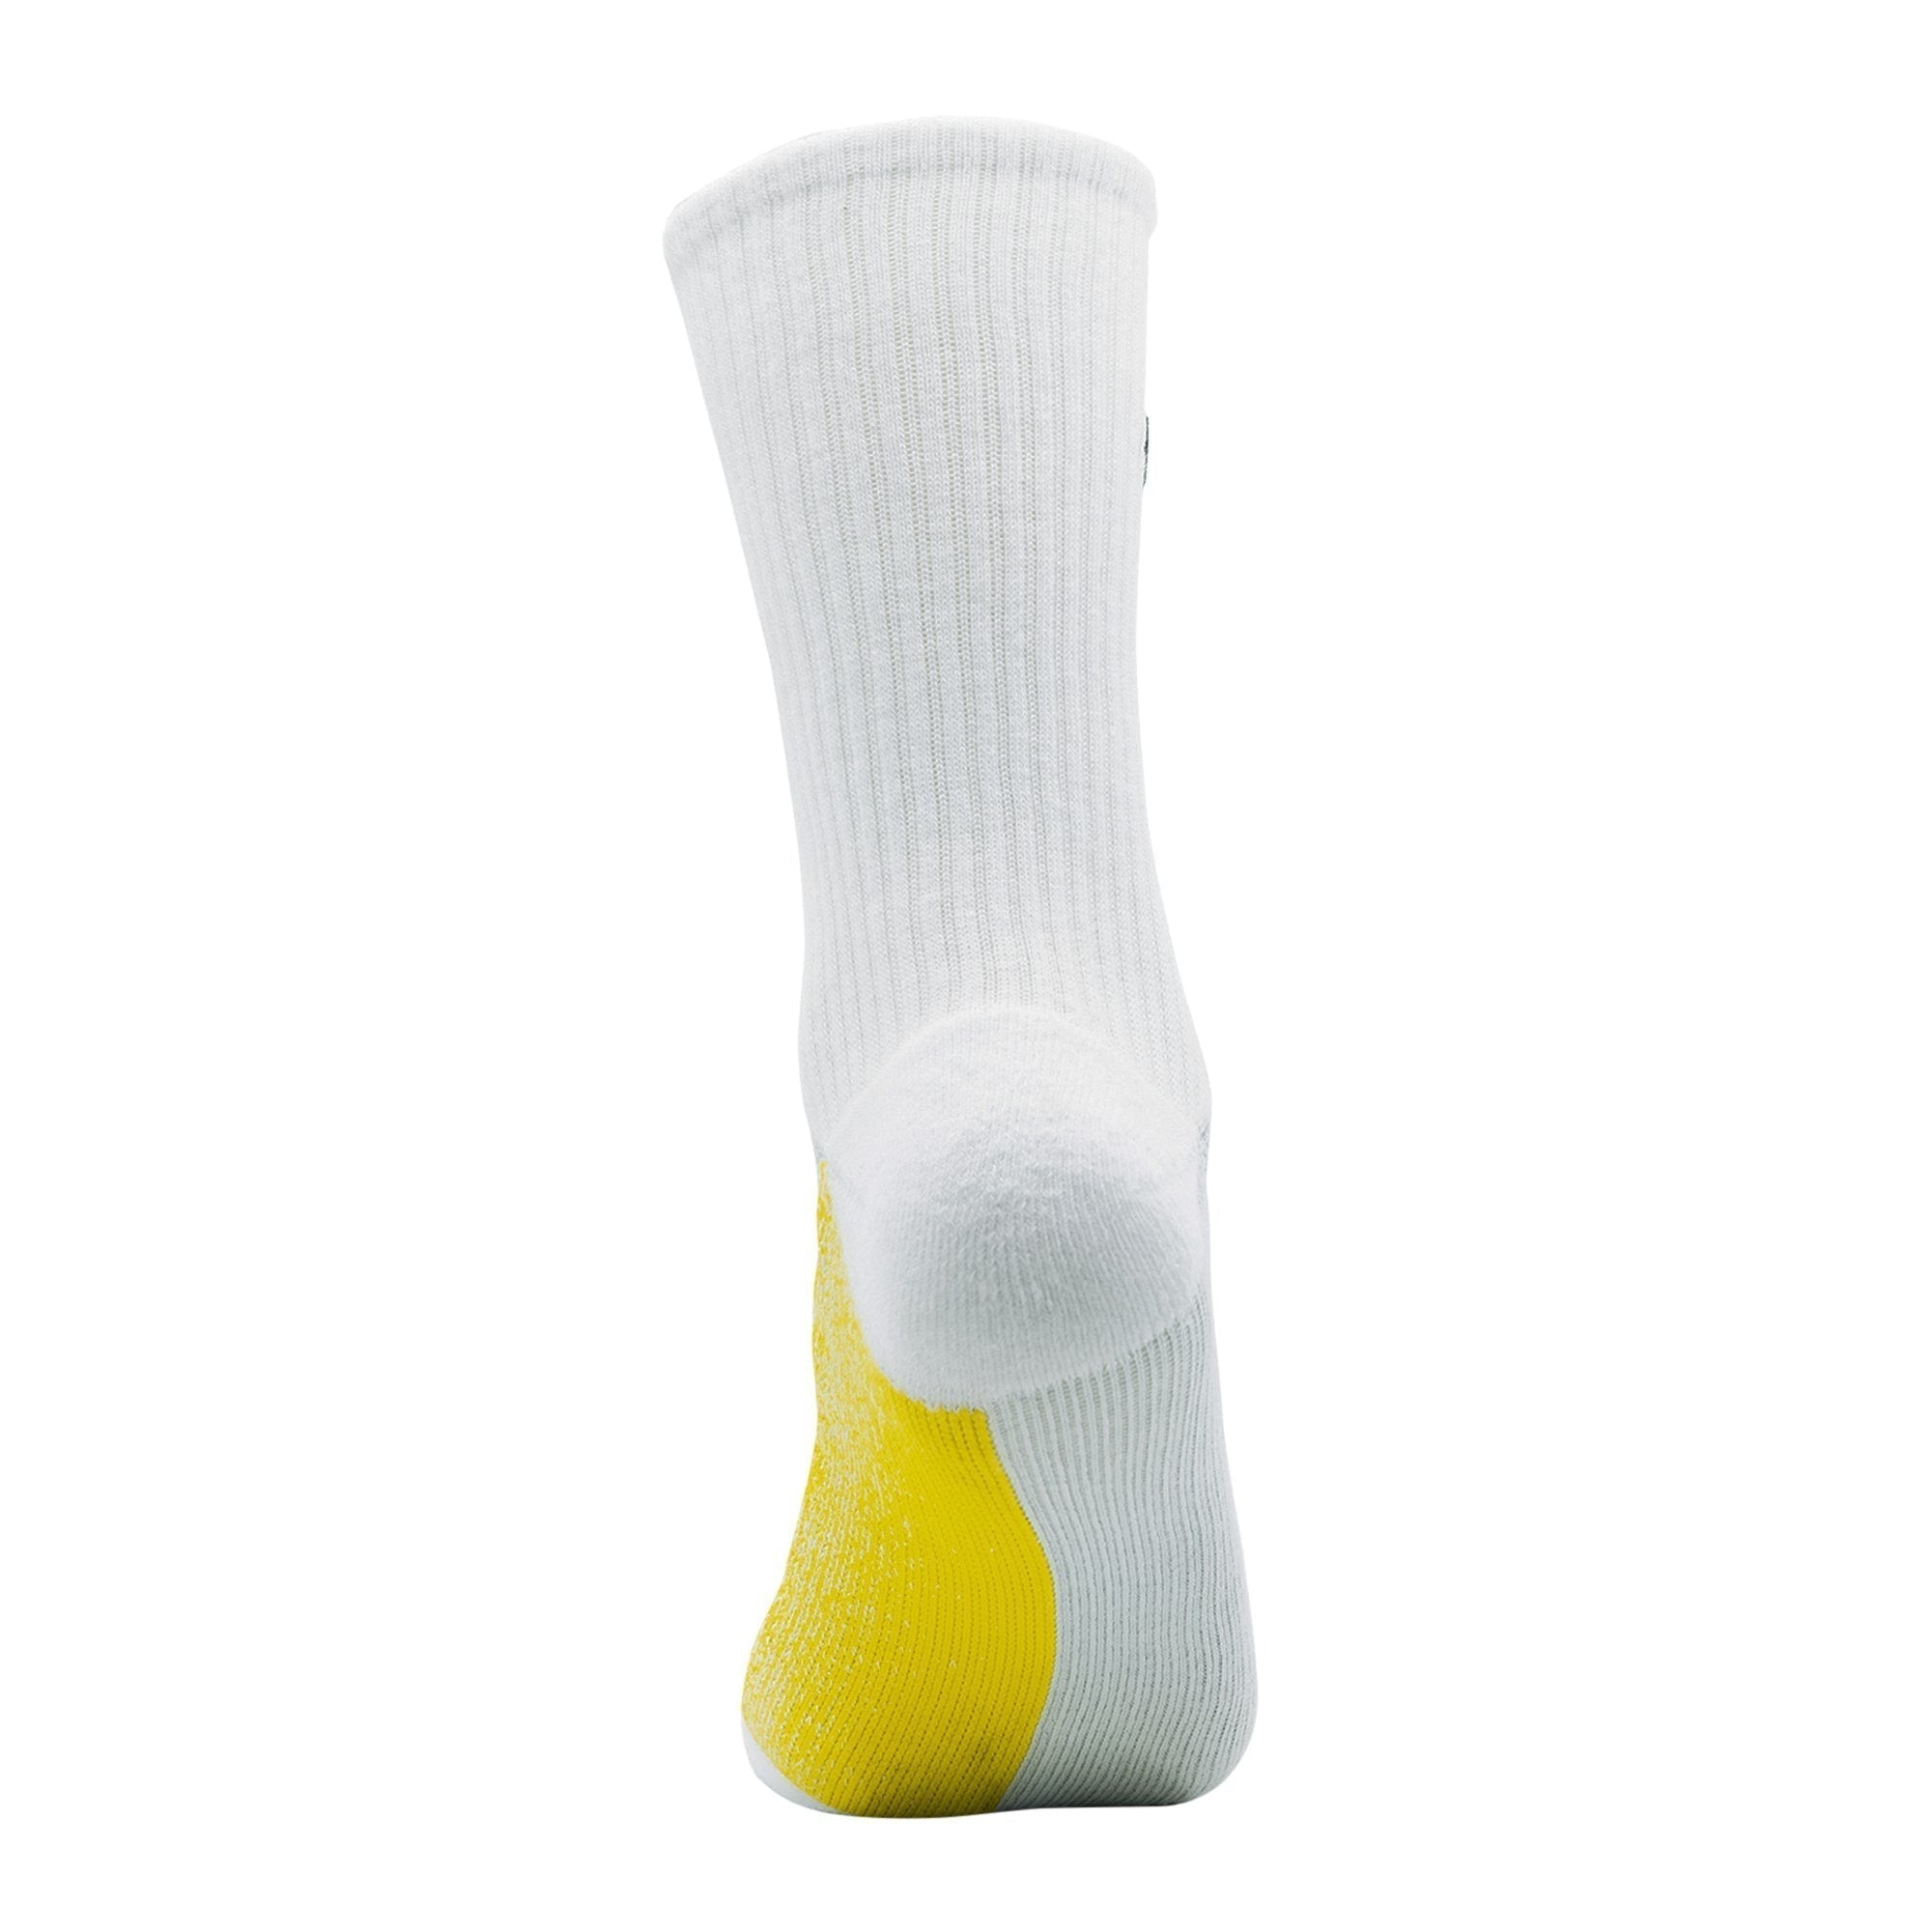 ArchTek® Socks (4 Pack Combo) upsell ArchTek 